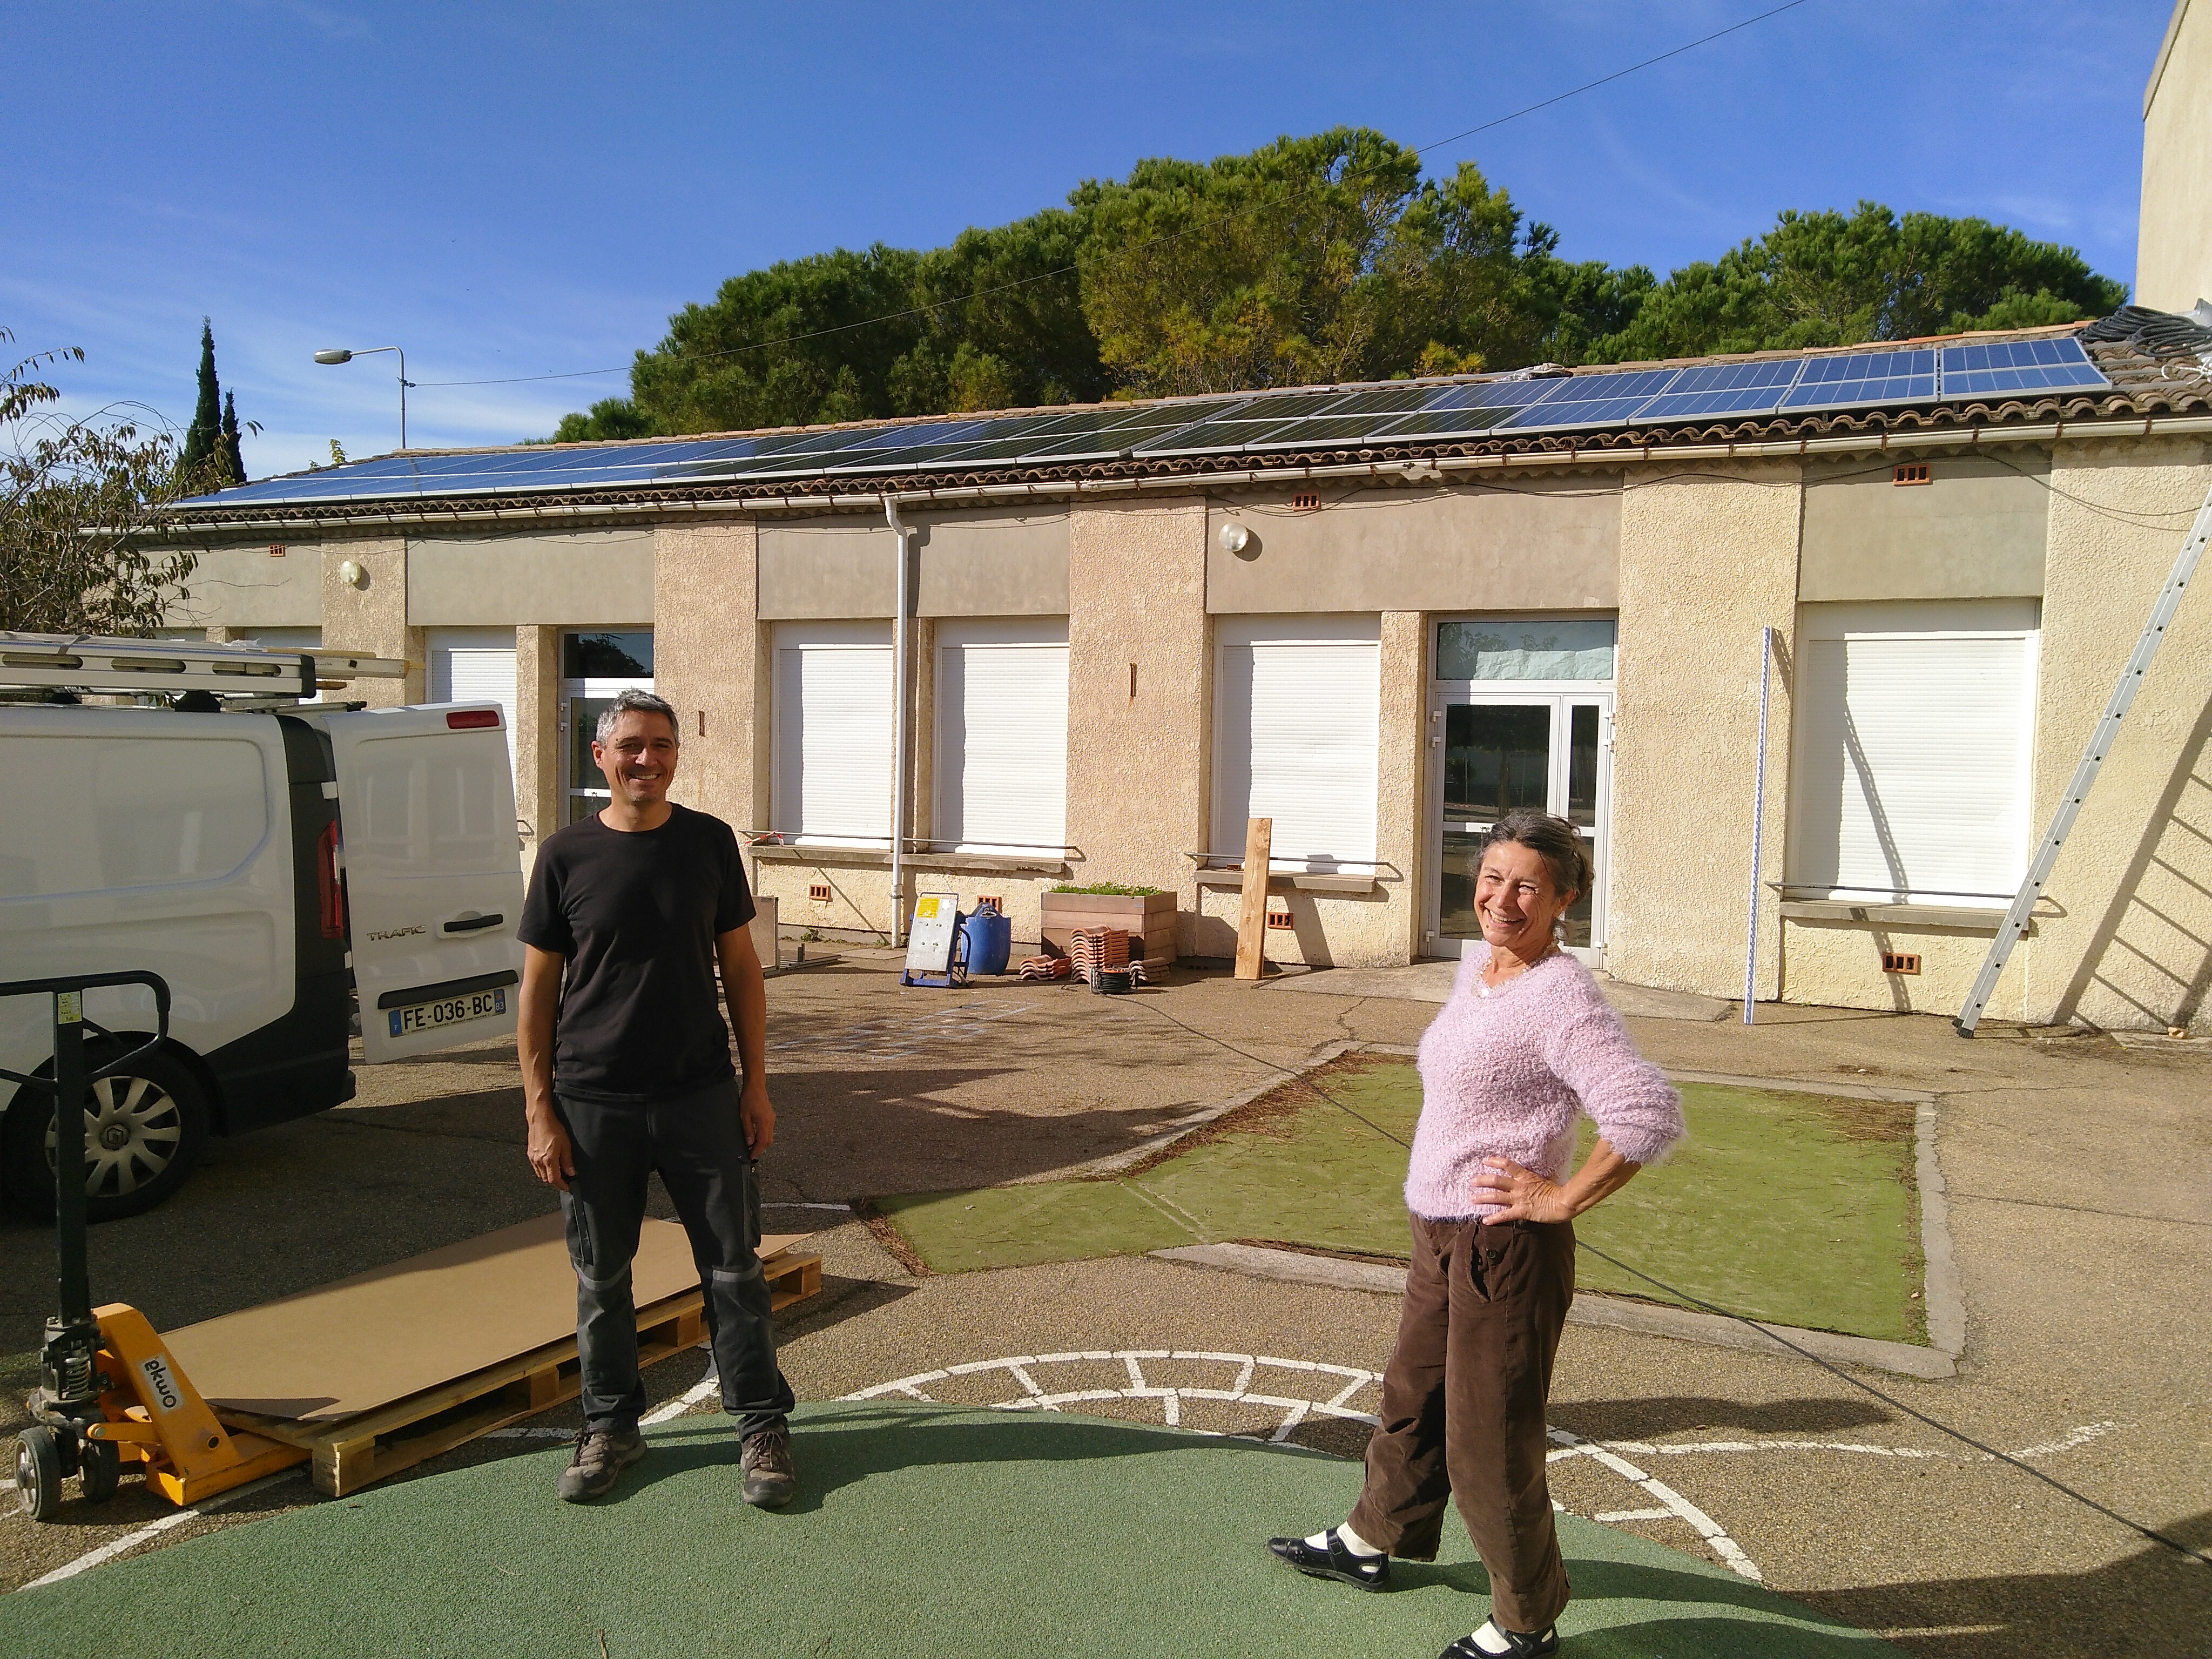 Le chantier de l'école Pergaud à Raphèle les Arles, novembre 2020